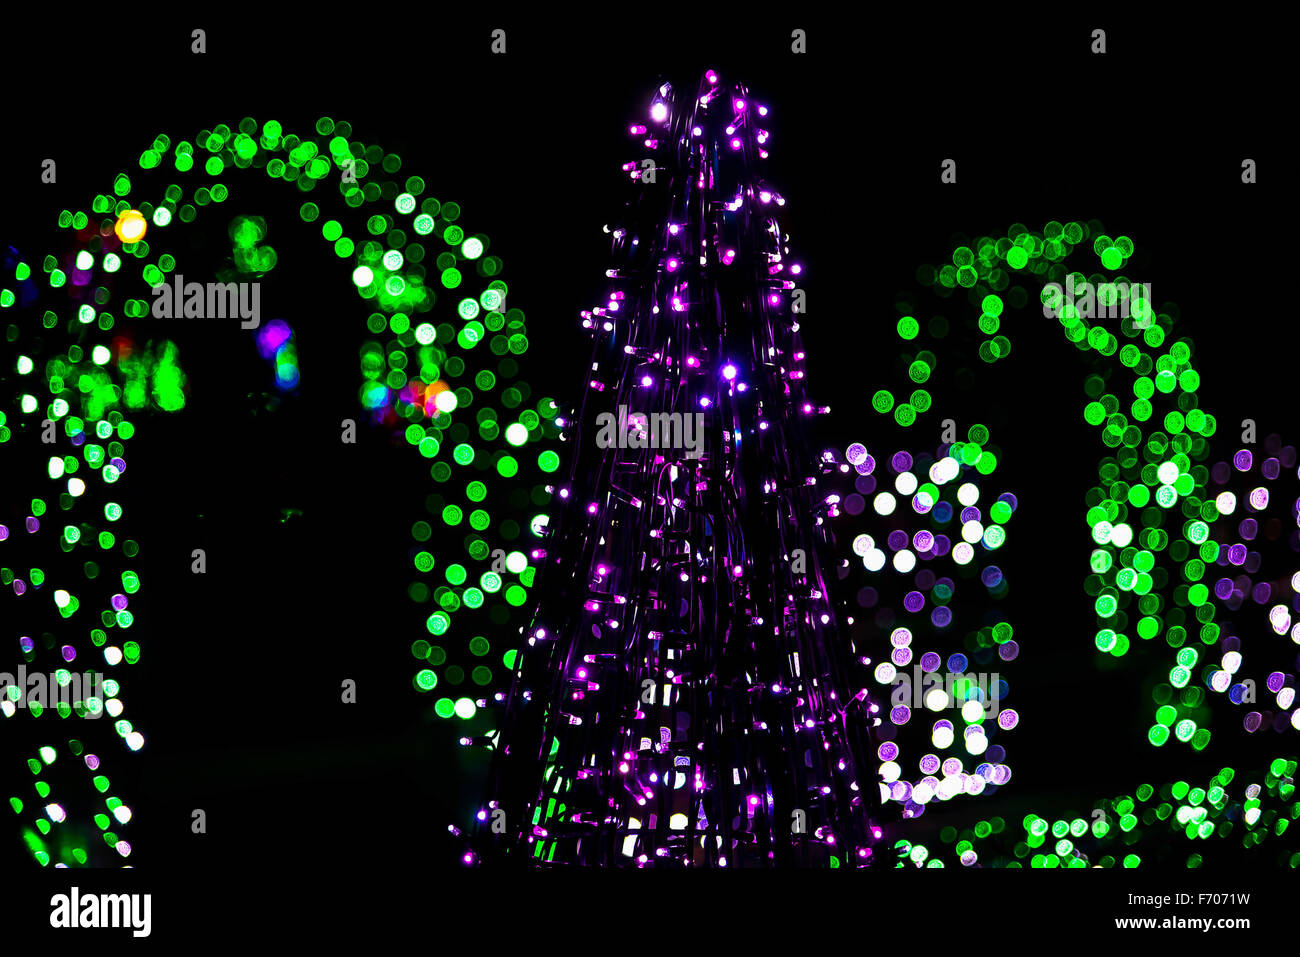 En la escultura del árbol de Navidad de guirnaldas con luces verdes en la noche Foto de stock